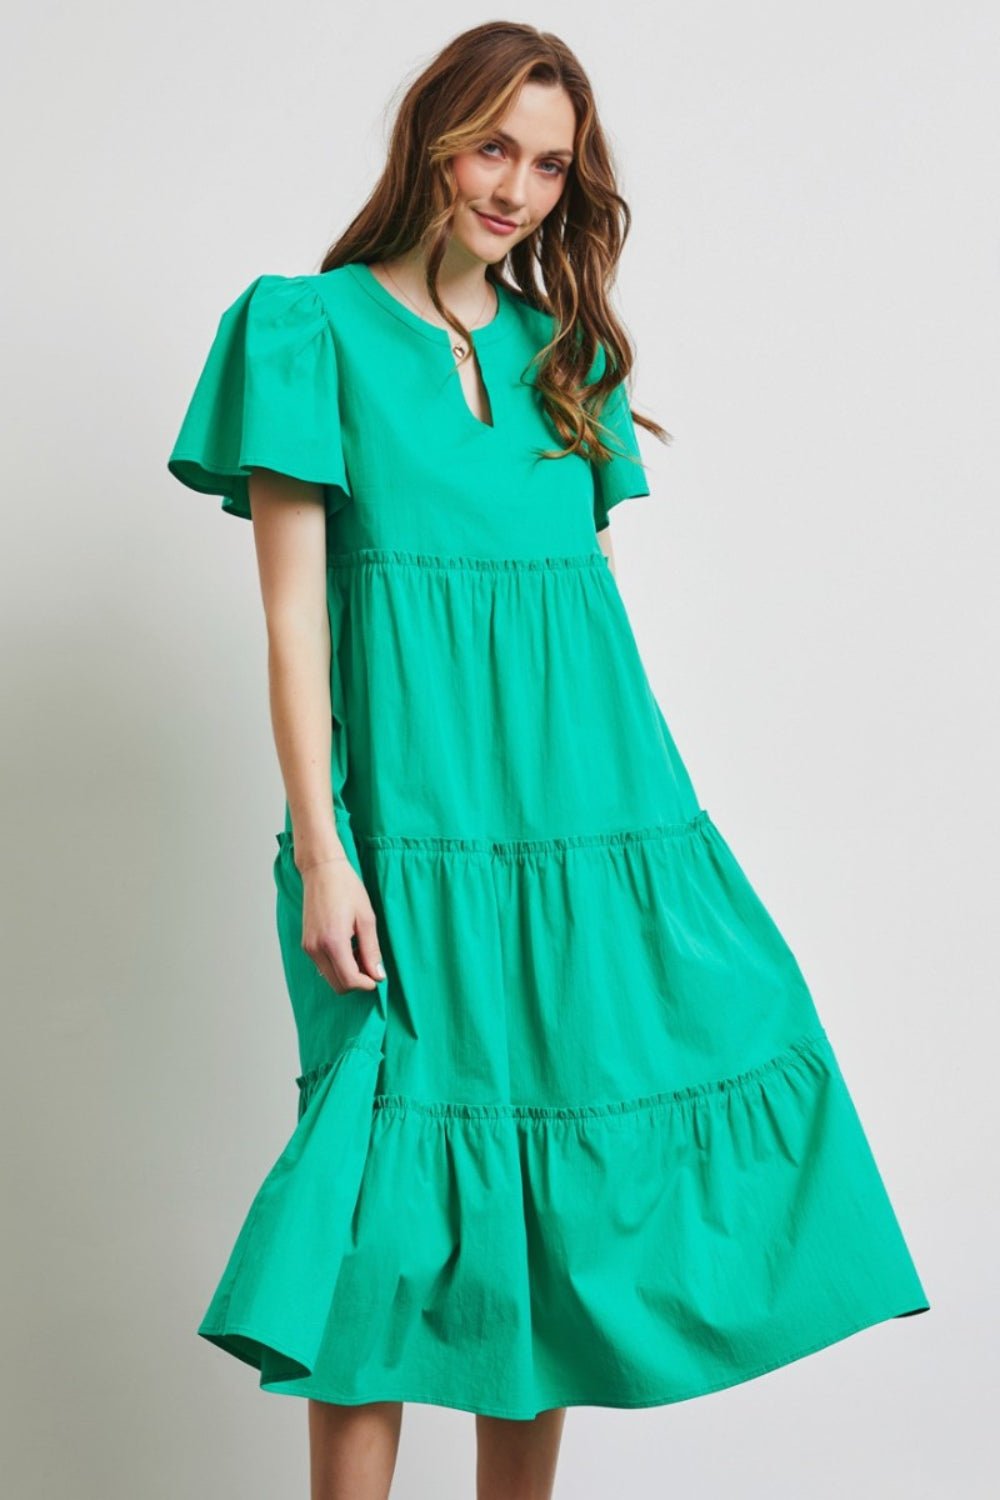 Cotton Poplin Ruffled Tiered Midi Dress in Emerald GreenMidi DressHEYSON